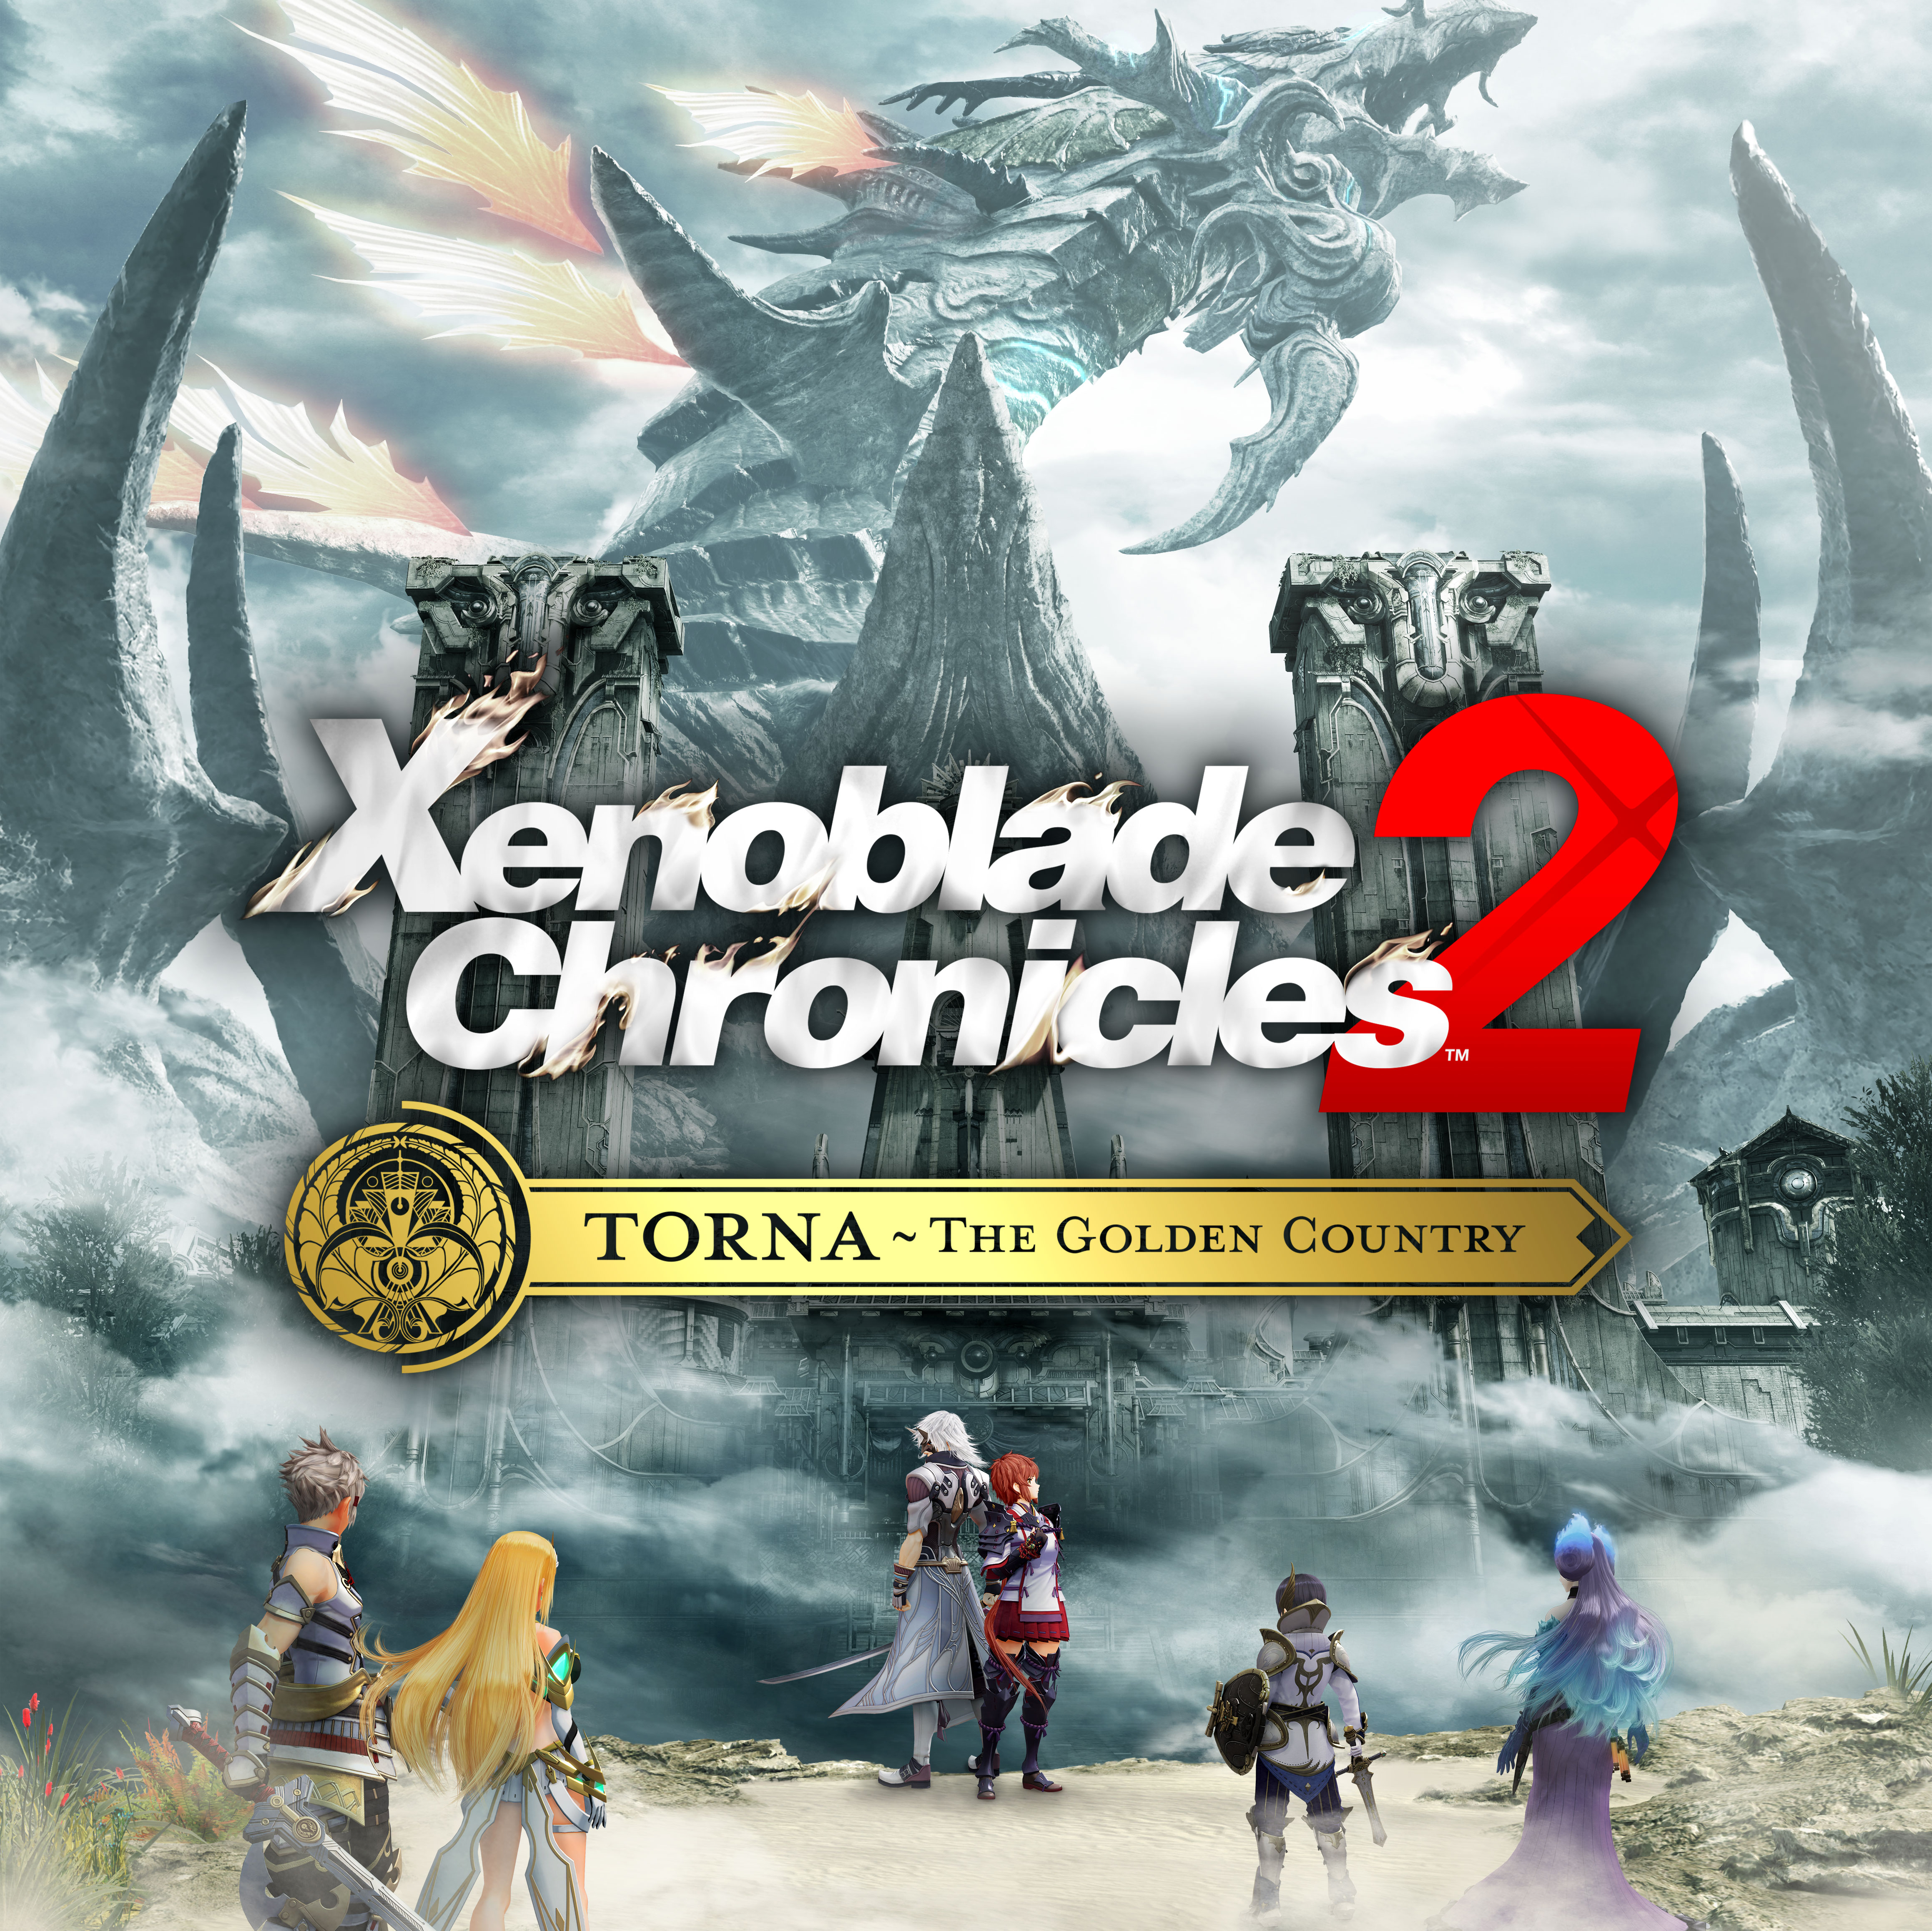 Descobre mais sobre os novos conteúdos Torna - The Golden Country para Xenoblade Chronicles 2!